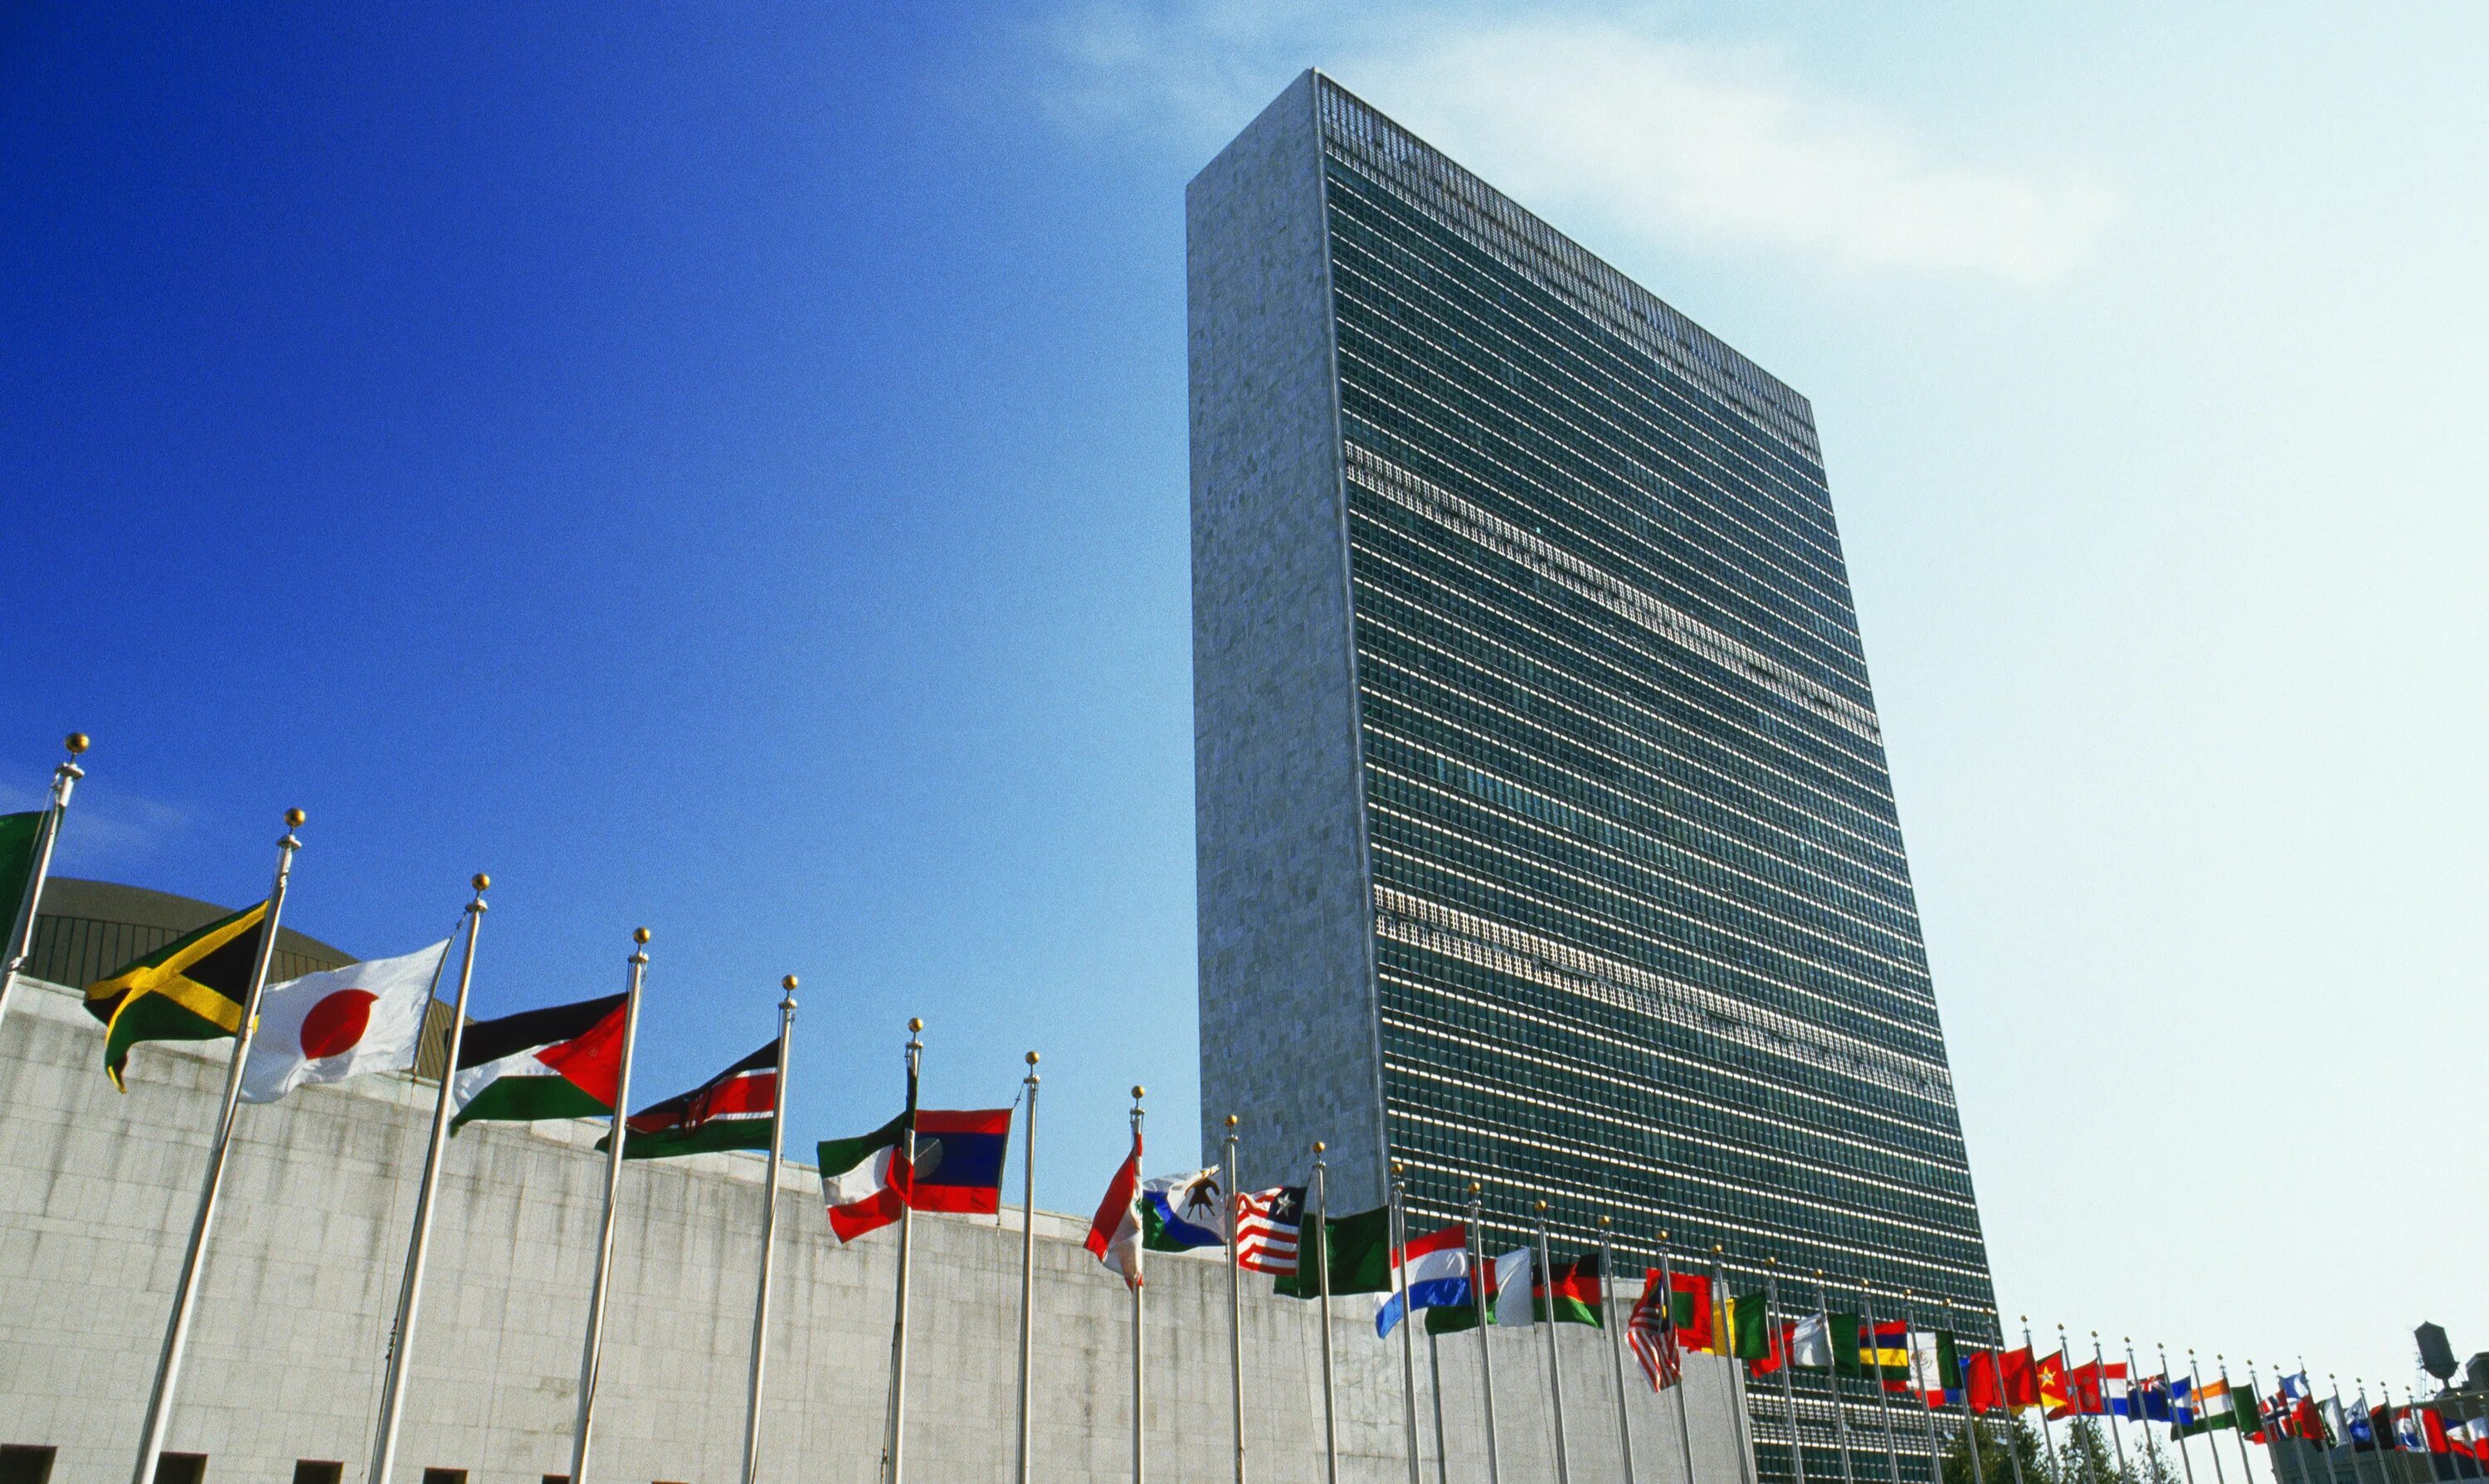 Штаб-квартира ООН В Нью-Йорке. Здание ООН В Нью-Йорке. Здание Генеральной Ассамблеи ООН В Нью-Йорке. Штаб-квартиры организации Объединённых наций в Нью-Йорке.. Офис оон